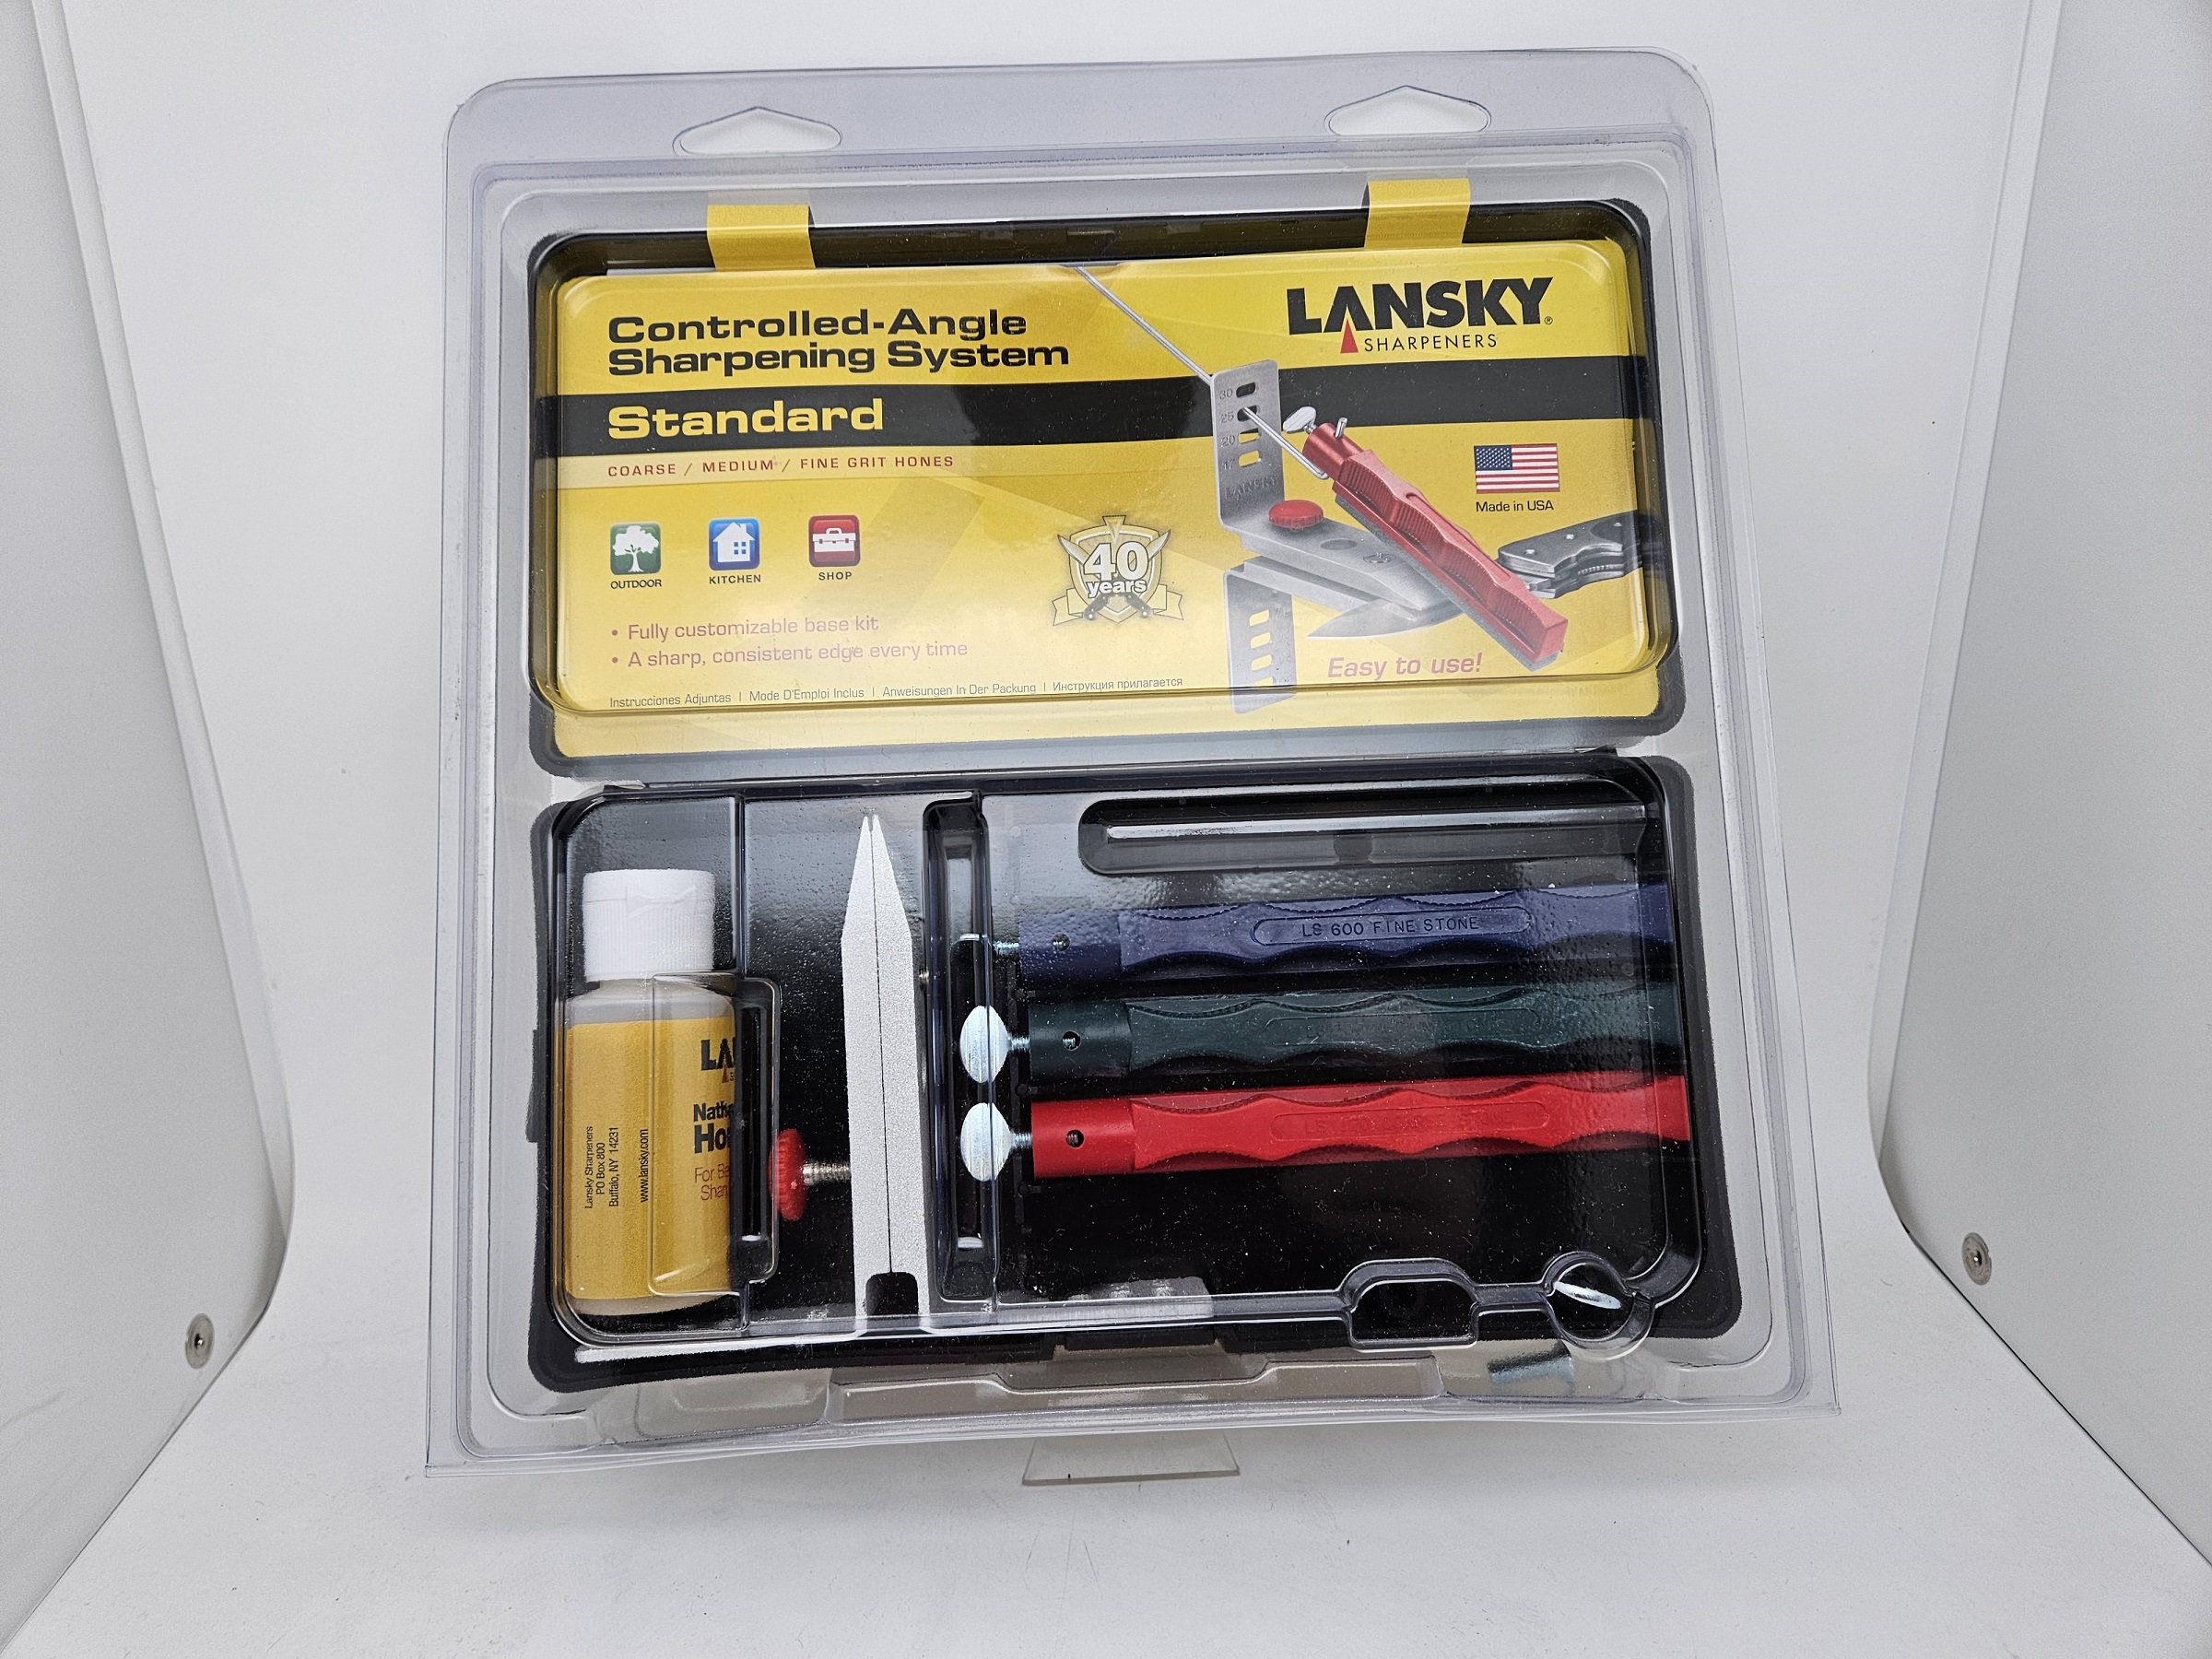 https://heimerdingercutlery.com/wp-content/uploads/2009/05/Lansky-LKC03-Standard-Knife-Sharpening-System.jpg